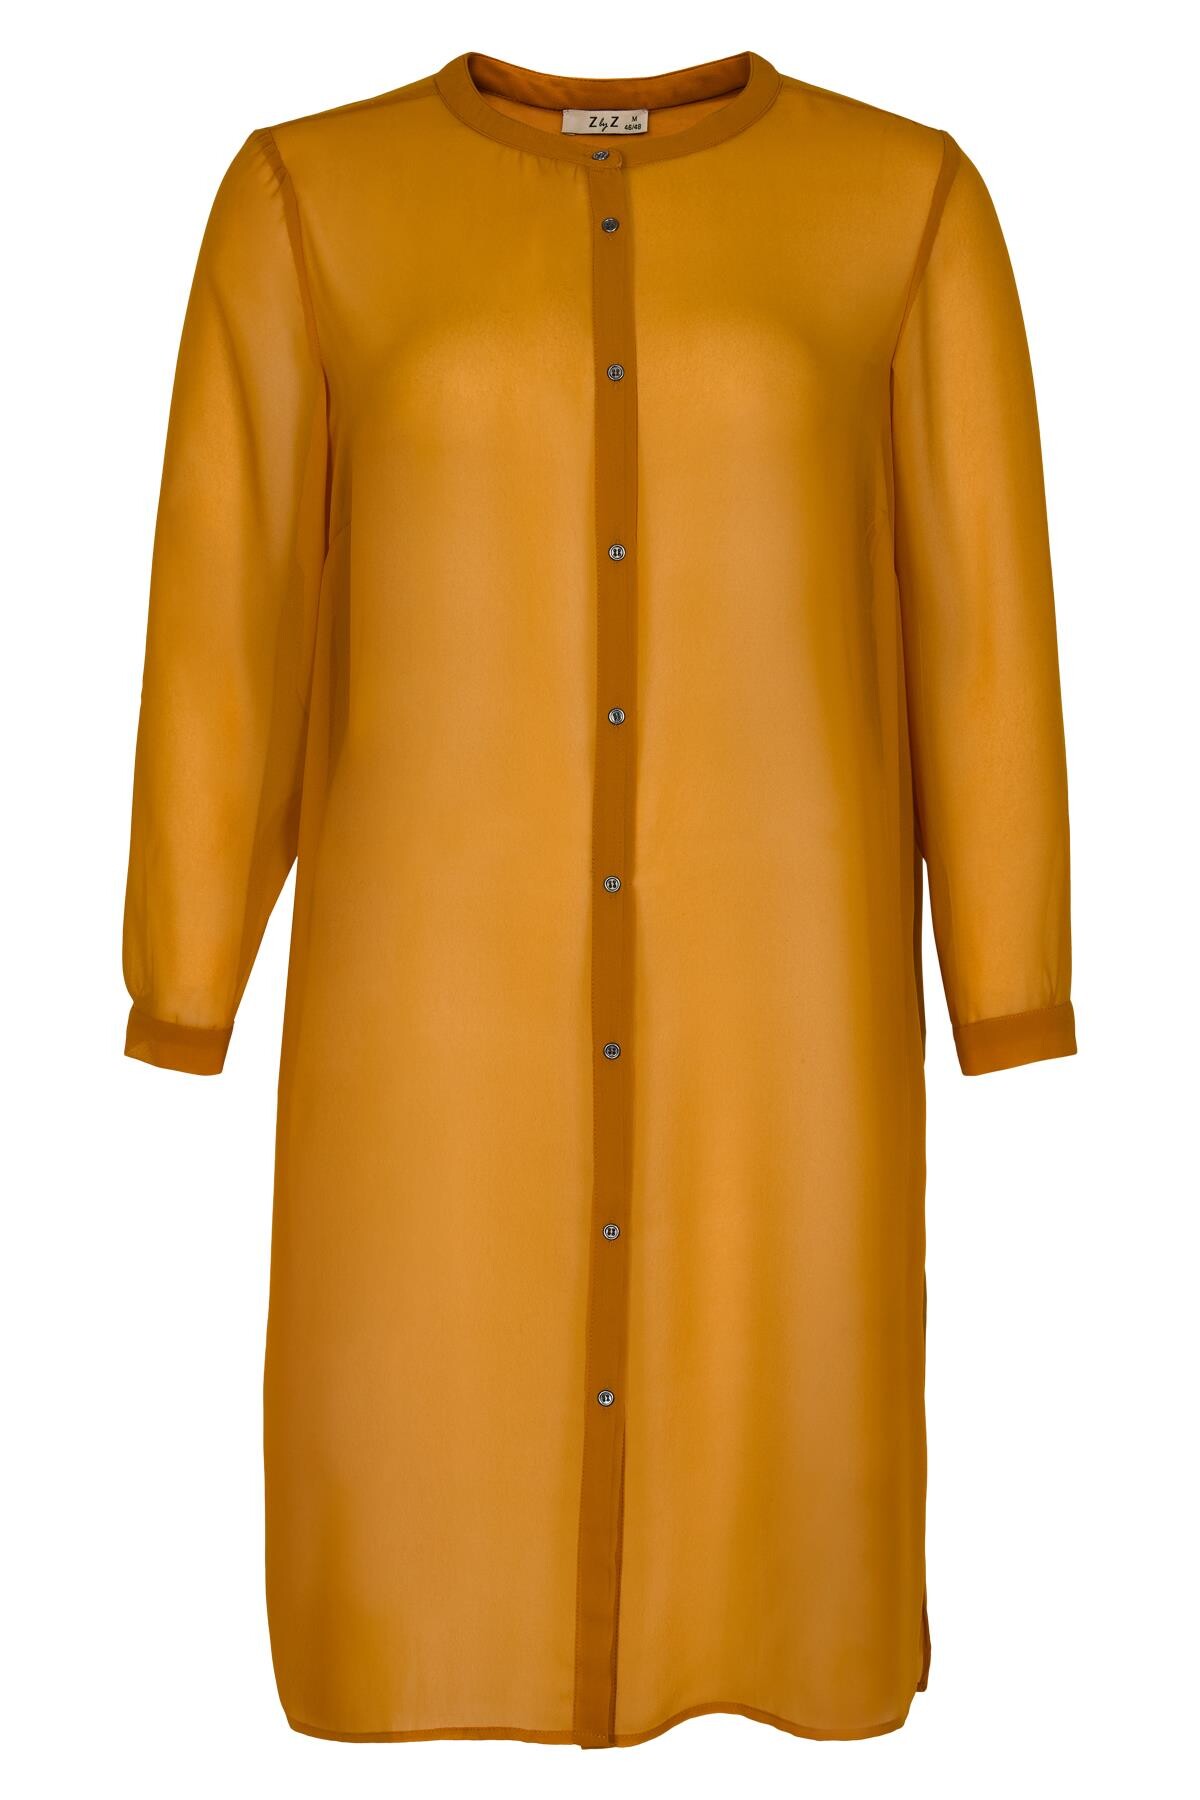 Zbyz Lang Skjorte Ez O, Farve: Orange, Størrelse: S, Dame